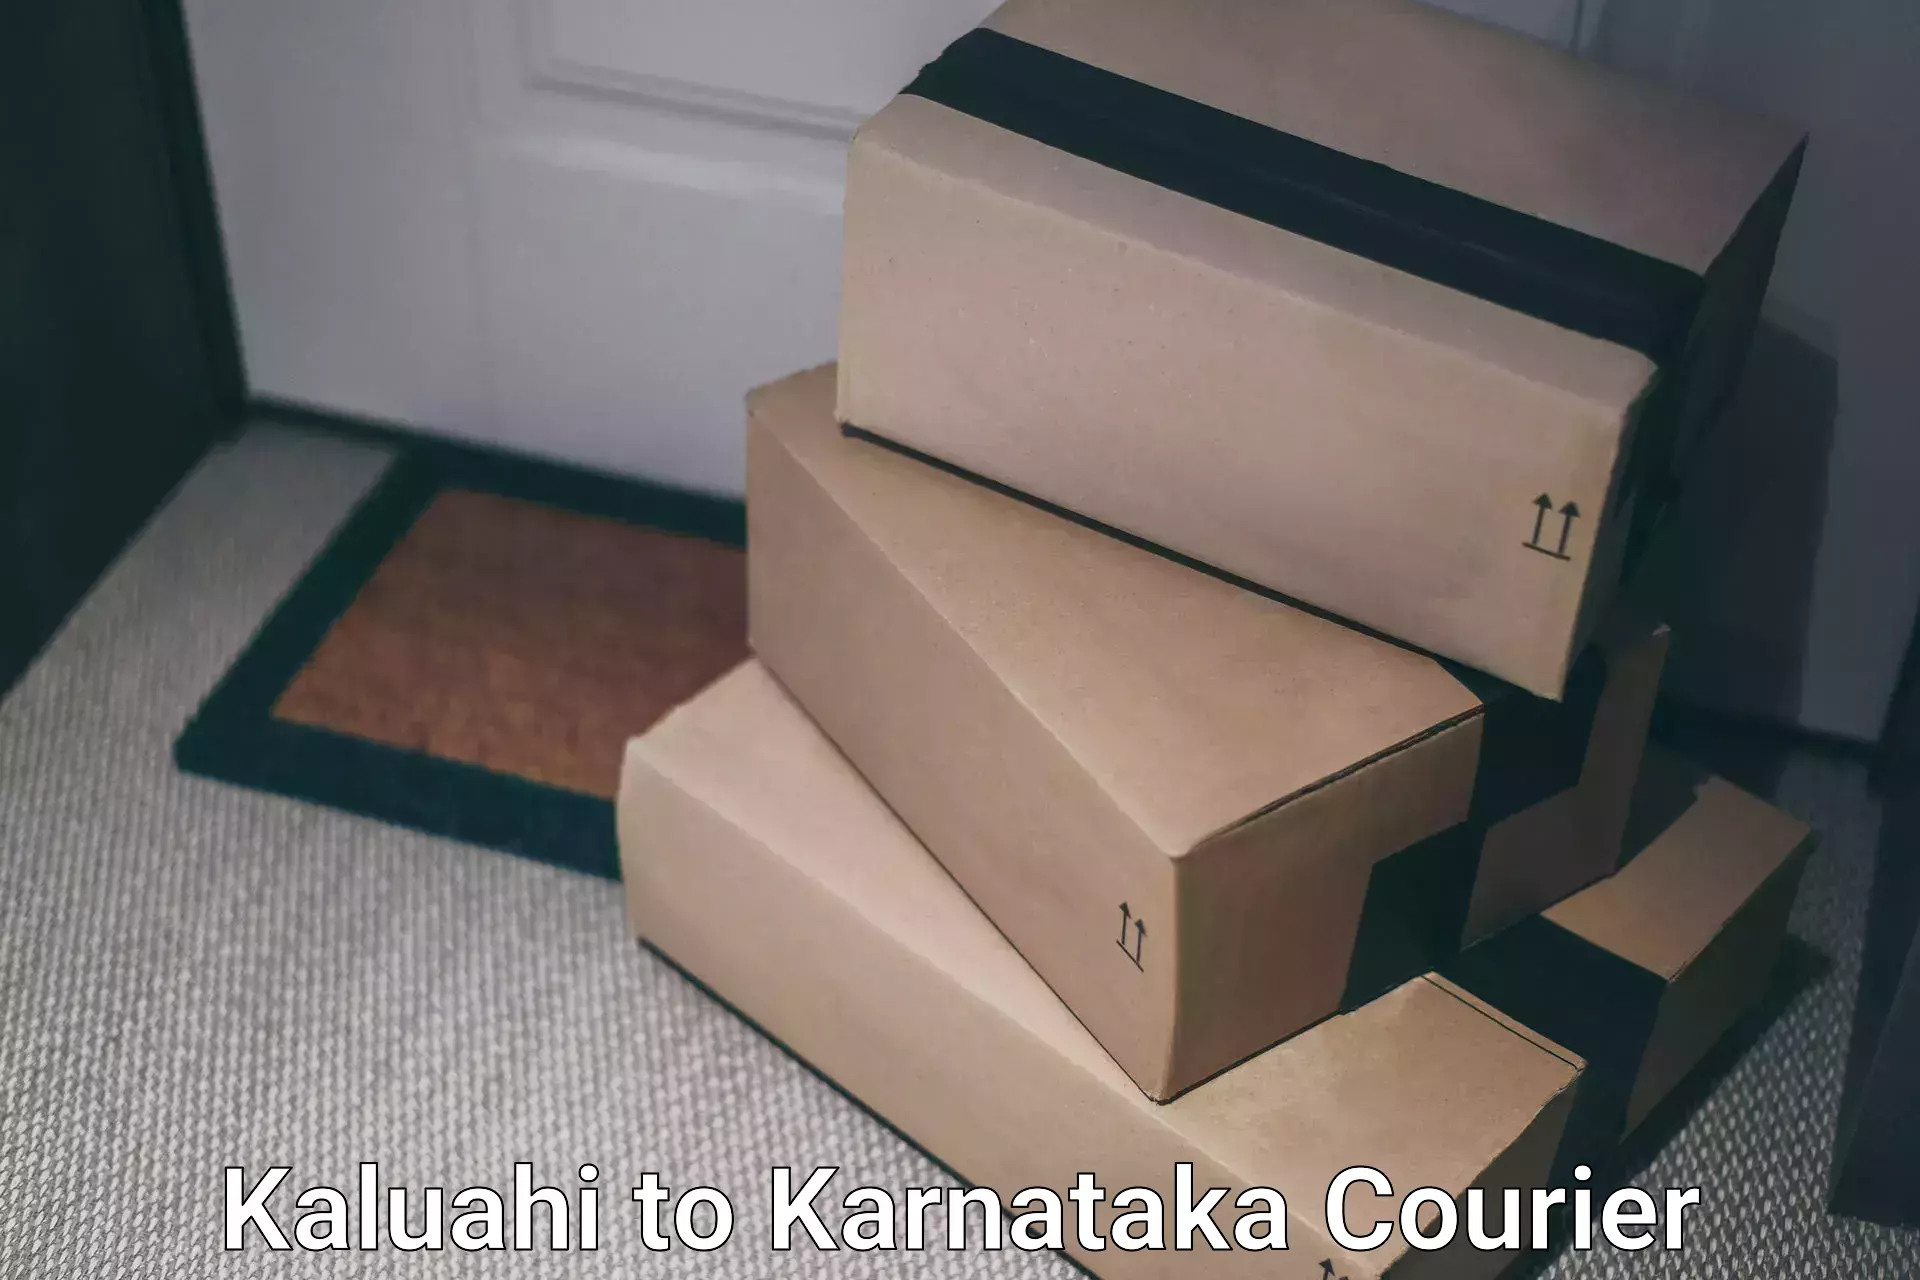 Global shipping solutions Kaluahi to Basavanagudi